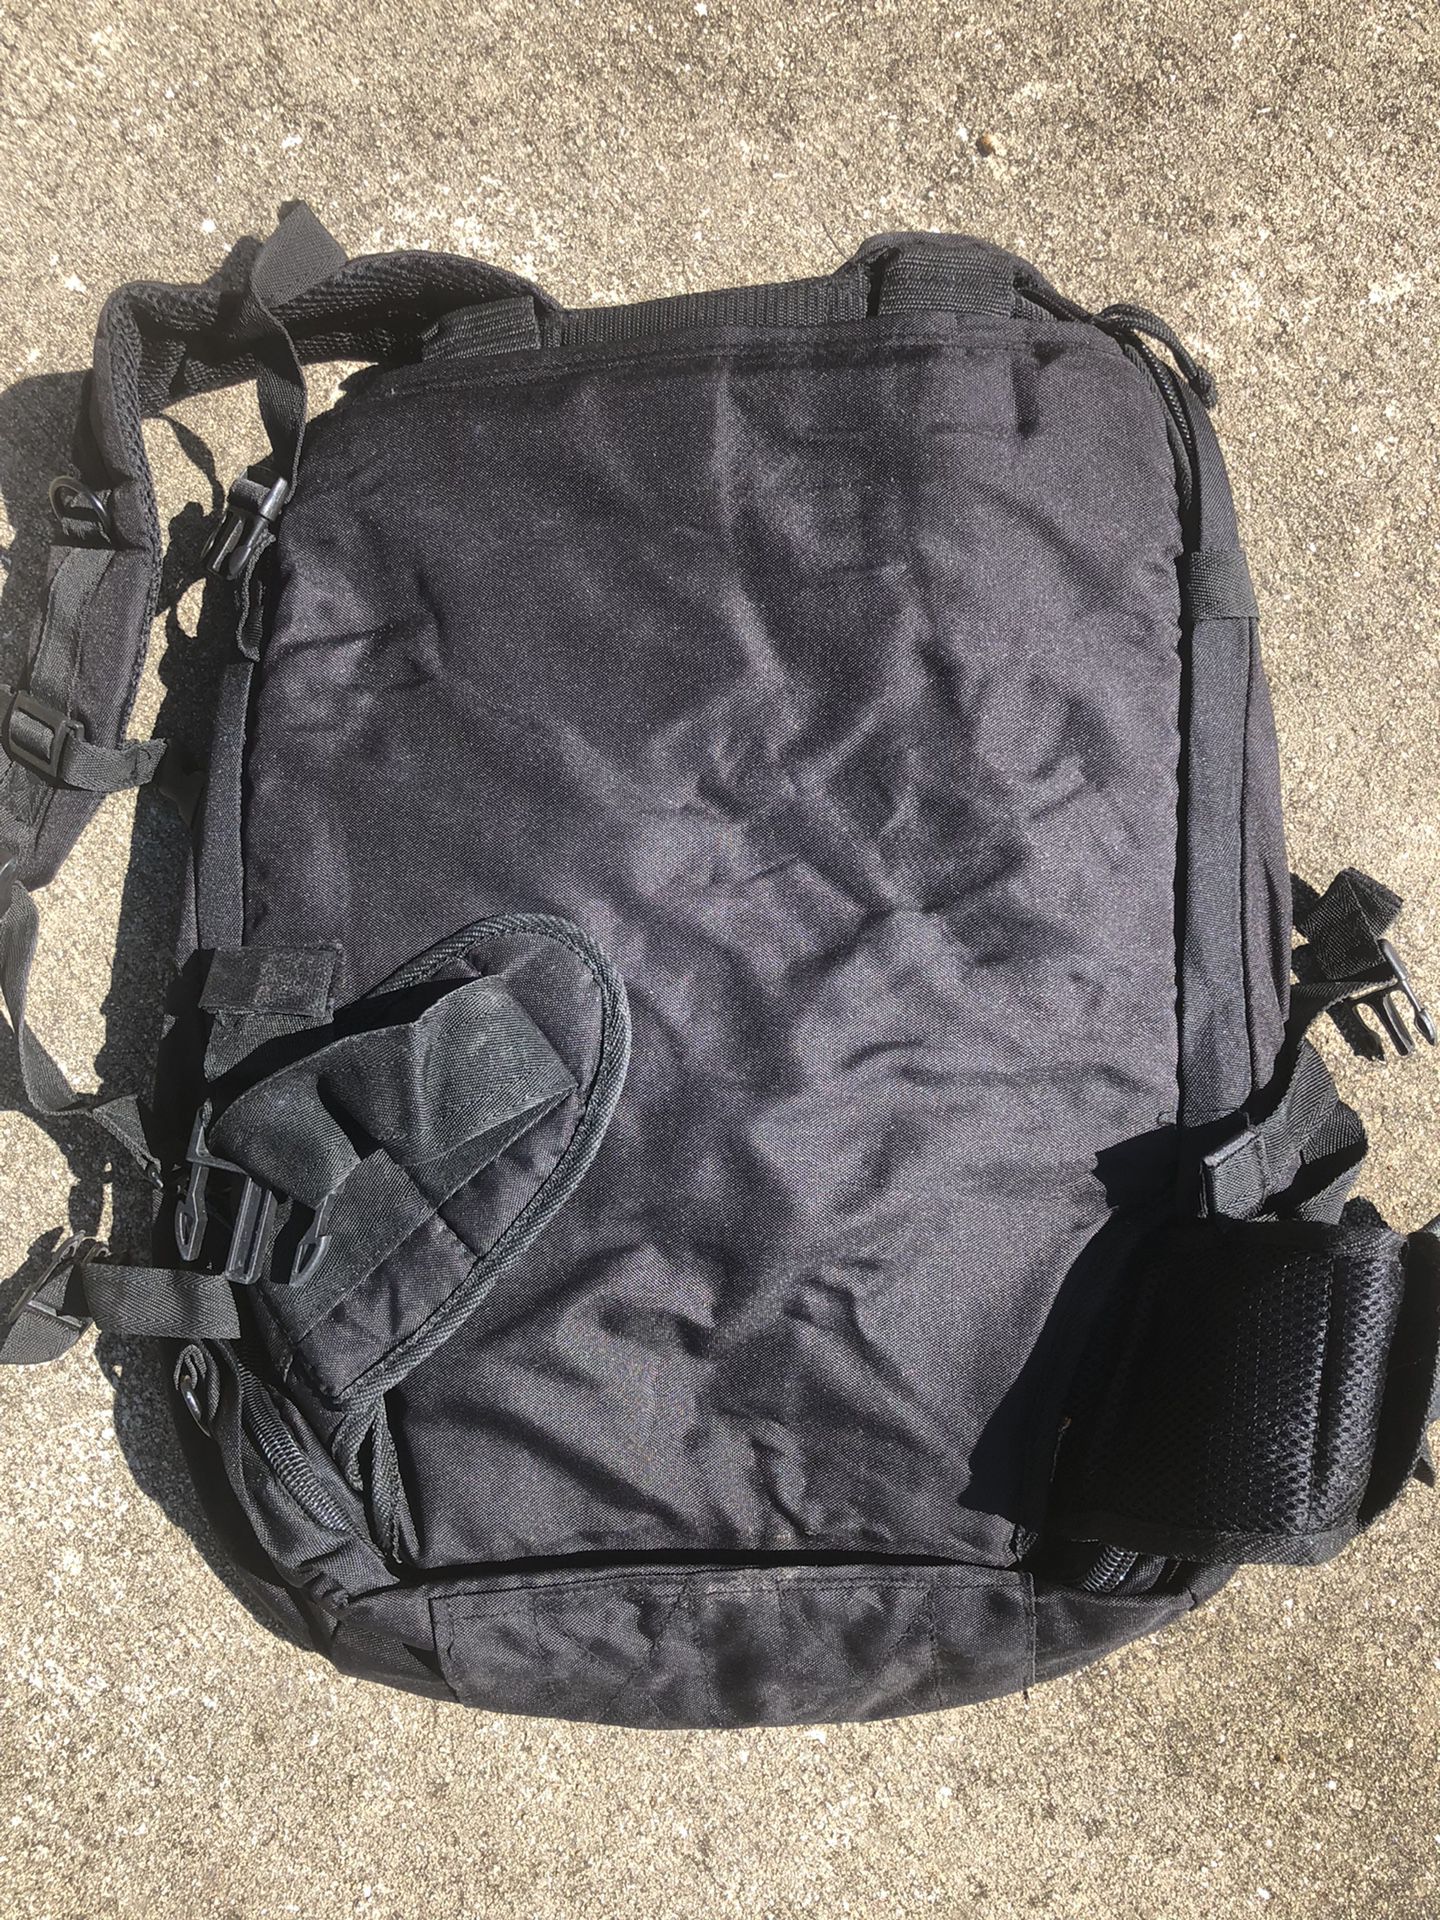 Black Military backpack